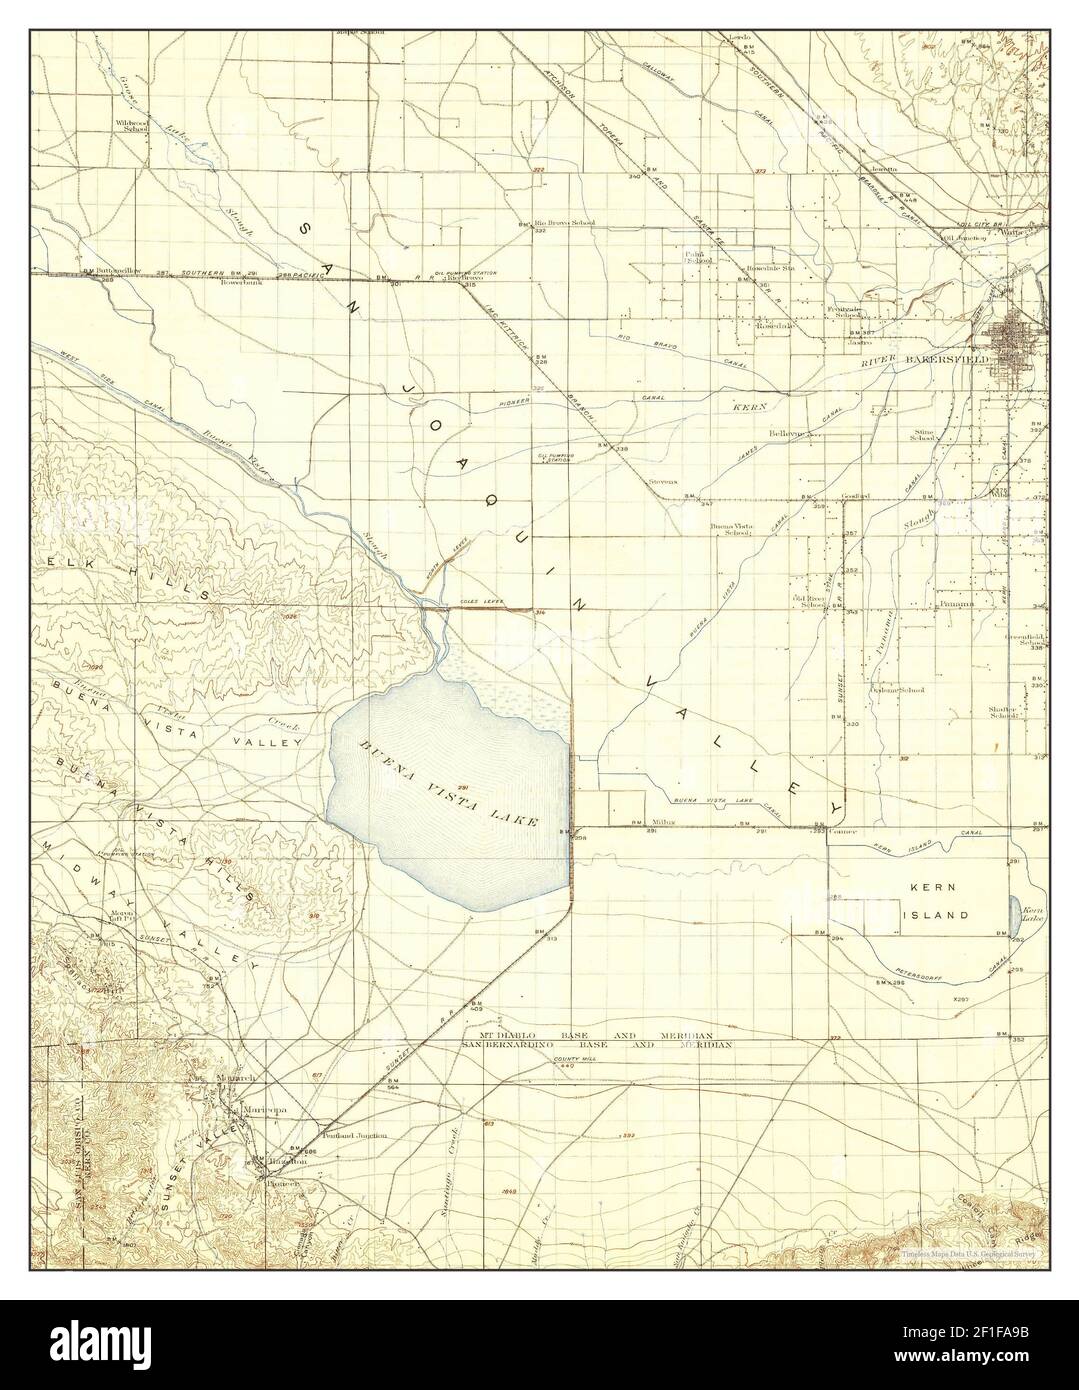 Buena Vista Lake, California, mappa 1912, 1:125000, Stati Uniti d'America da Timeless Maps, dati U.S. Geological Survey Foto Stock